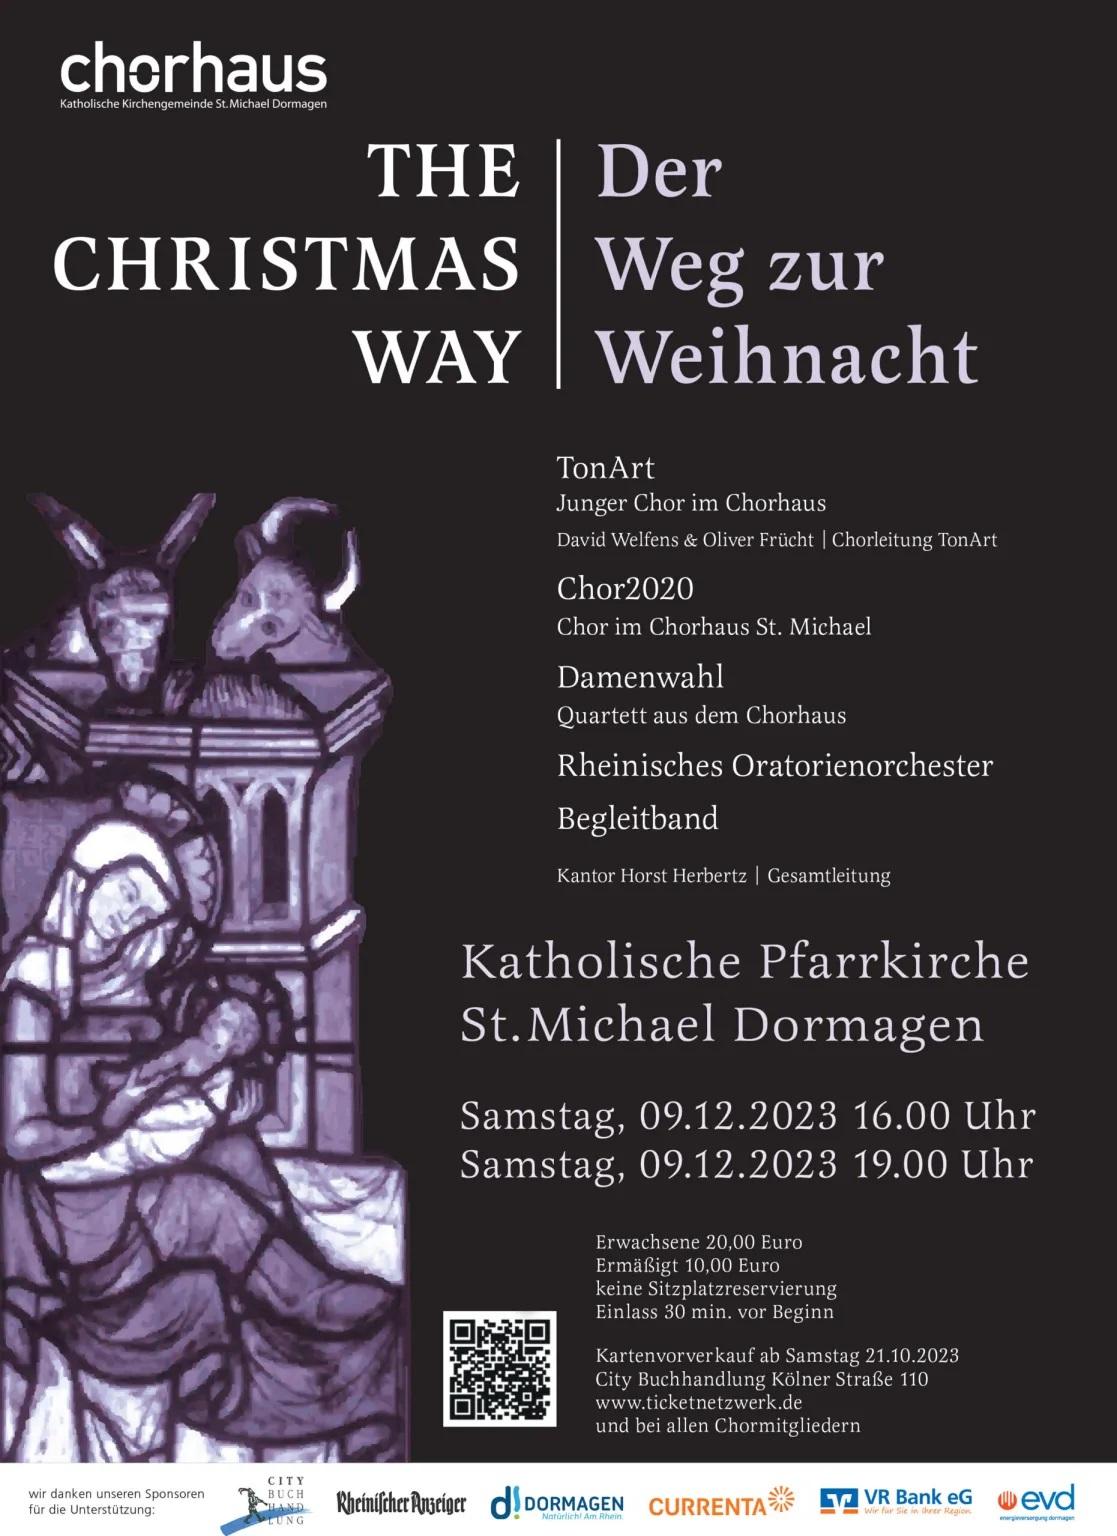 THE CHRISTMAS WAY | Der Weg zur Weihnacht am 9.12.2023